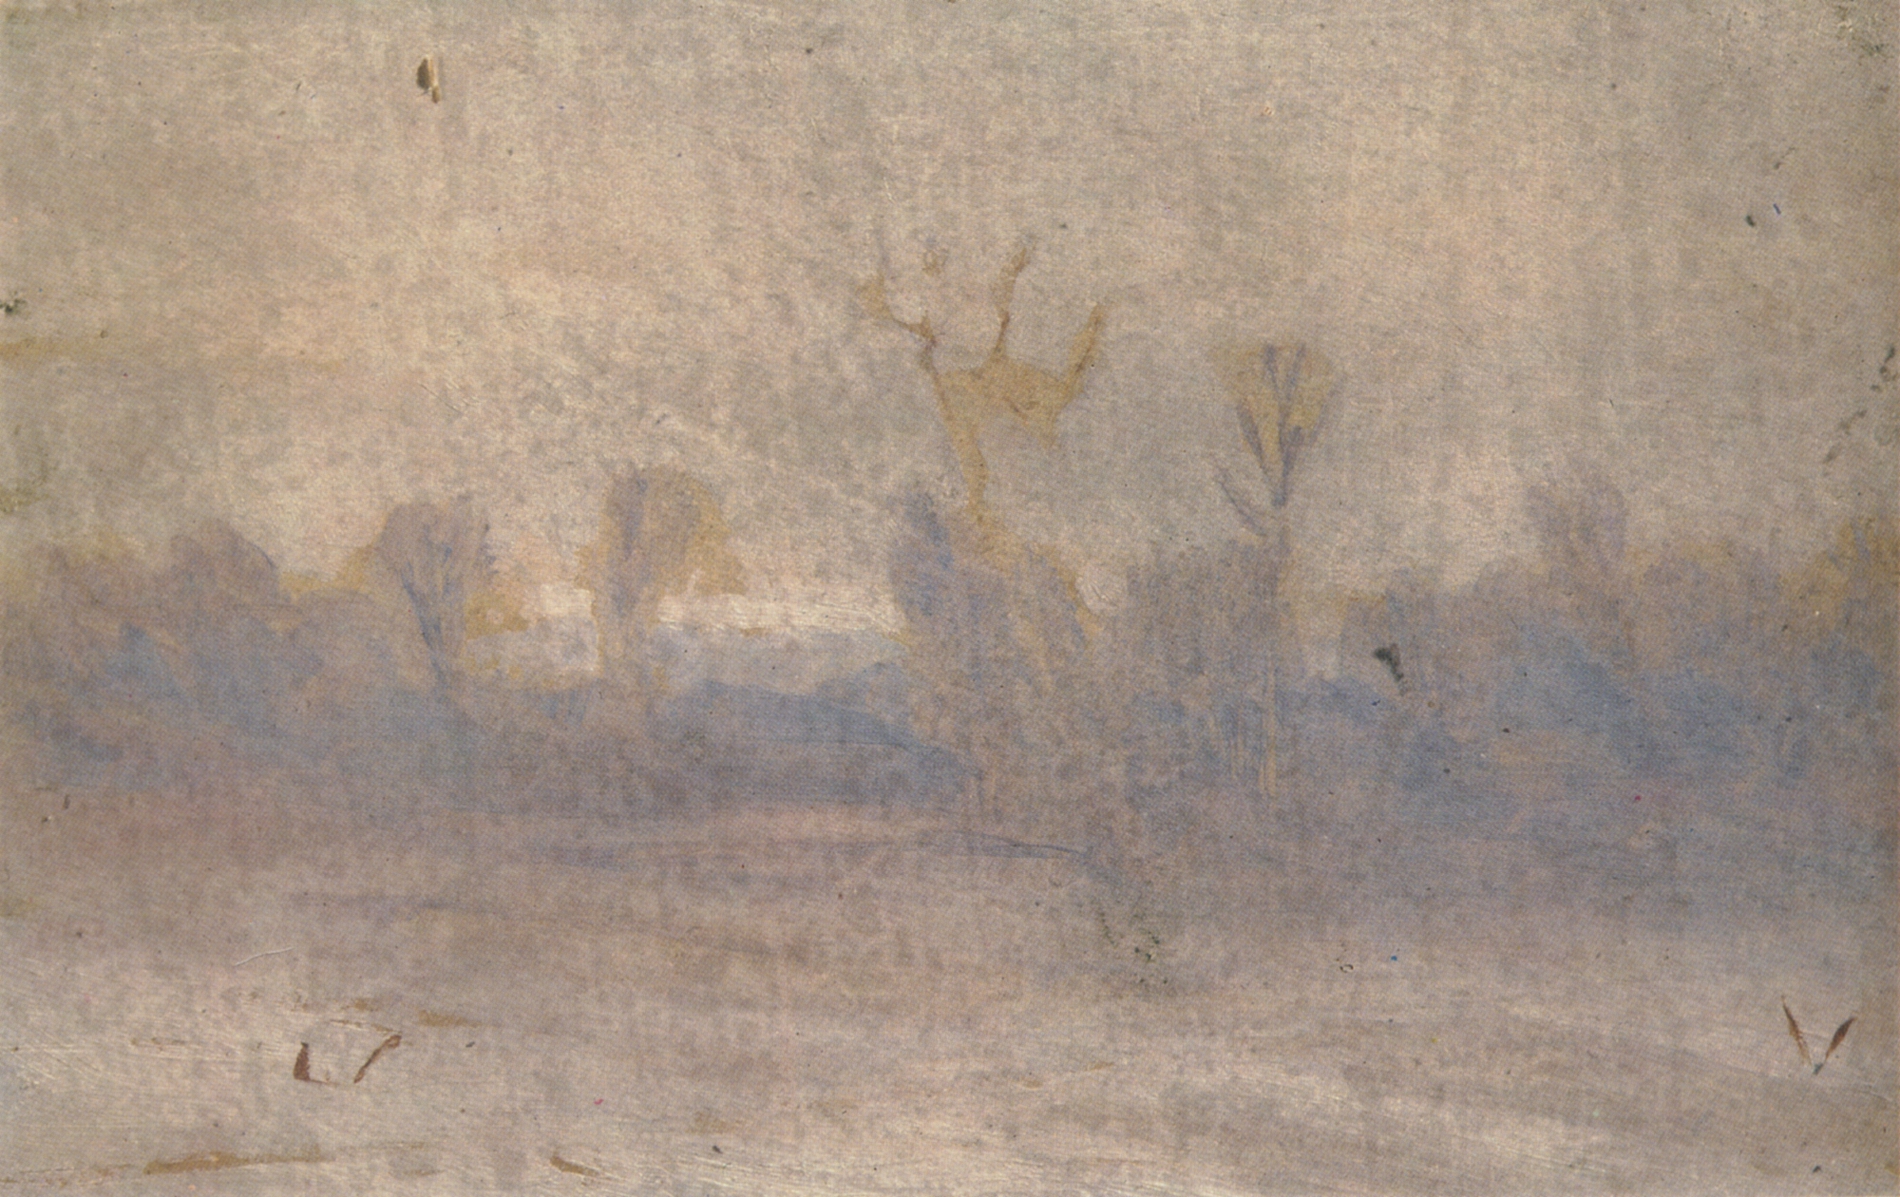 Куинджи. Зима. Туман. 1890-1895